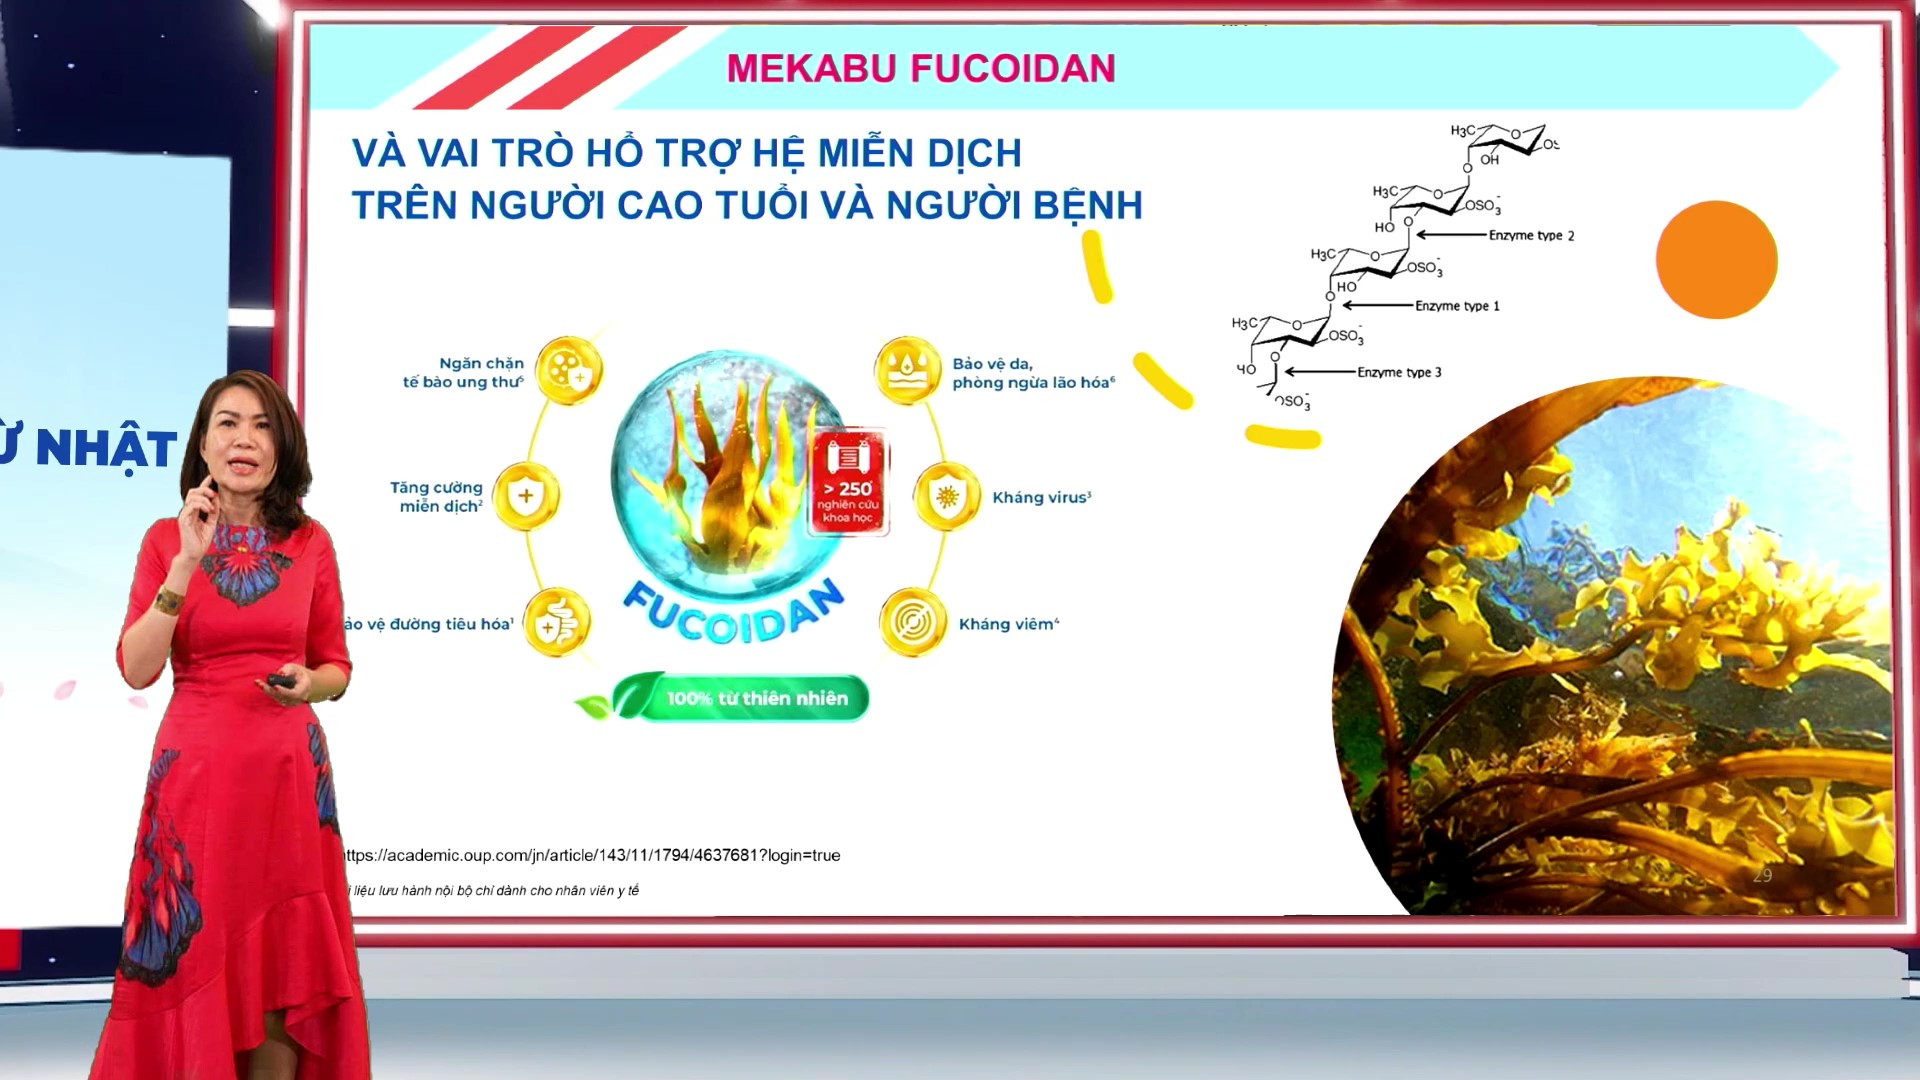 ThS.BS CKII. Nguyễn Viết Quỳnh Thư trình bày về vai trò Fucoidan trong việc hỗ trợ hệ miễn dịch trên người cao tuổi và người bệnh